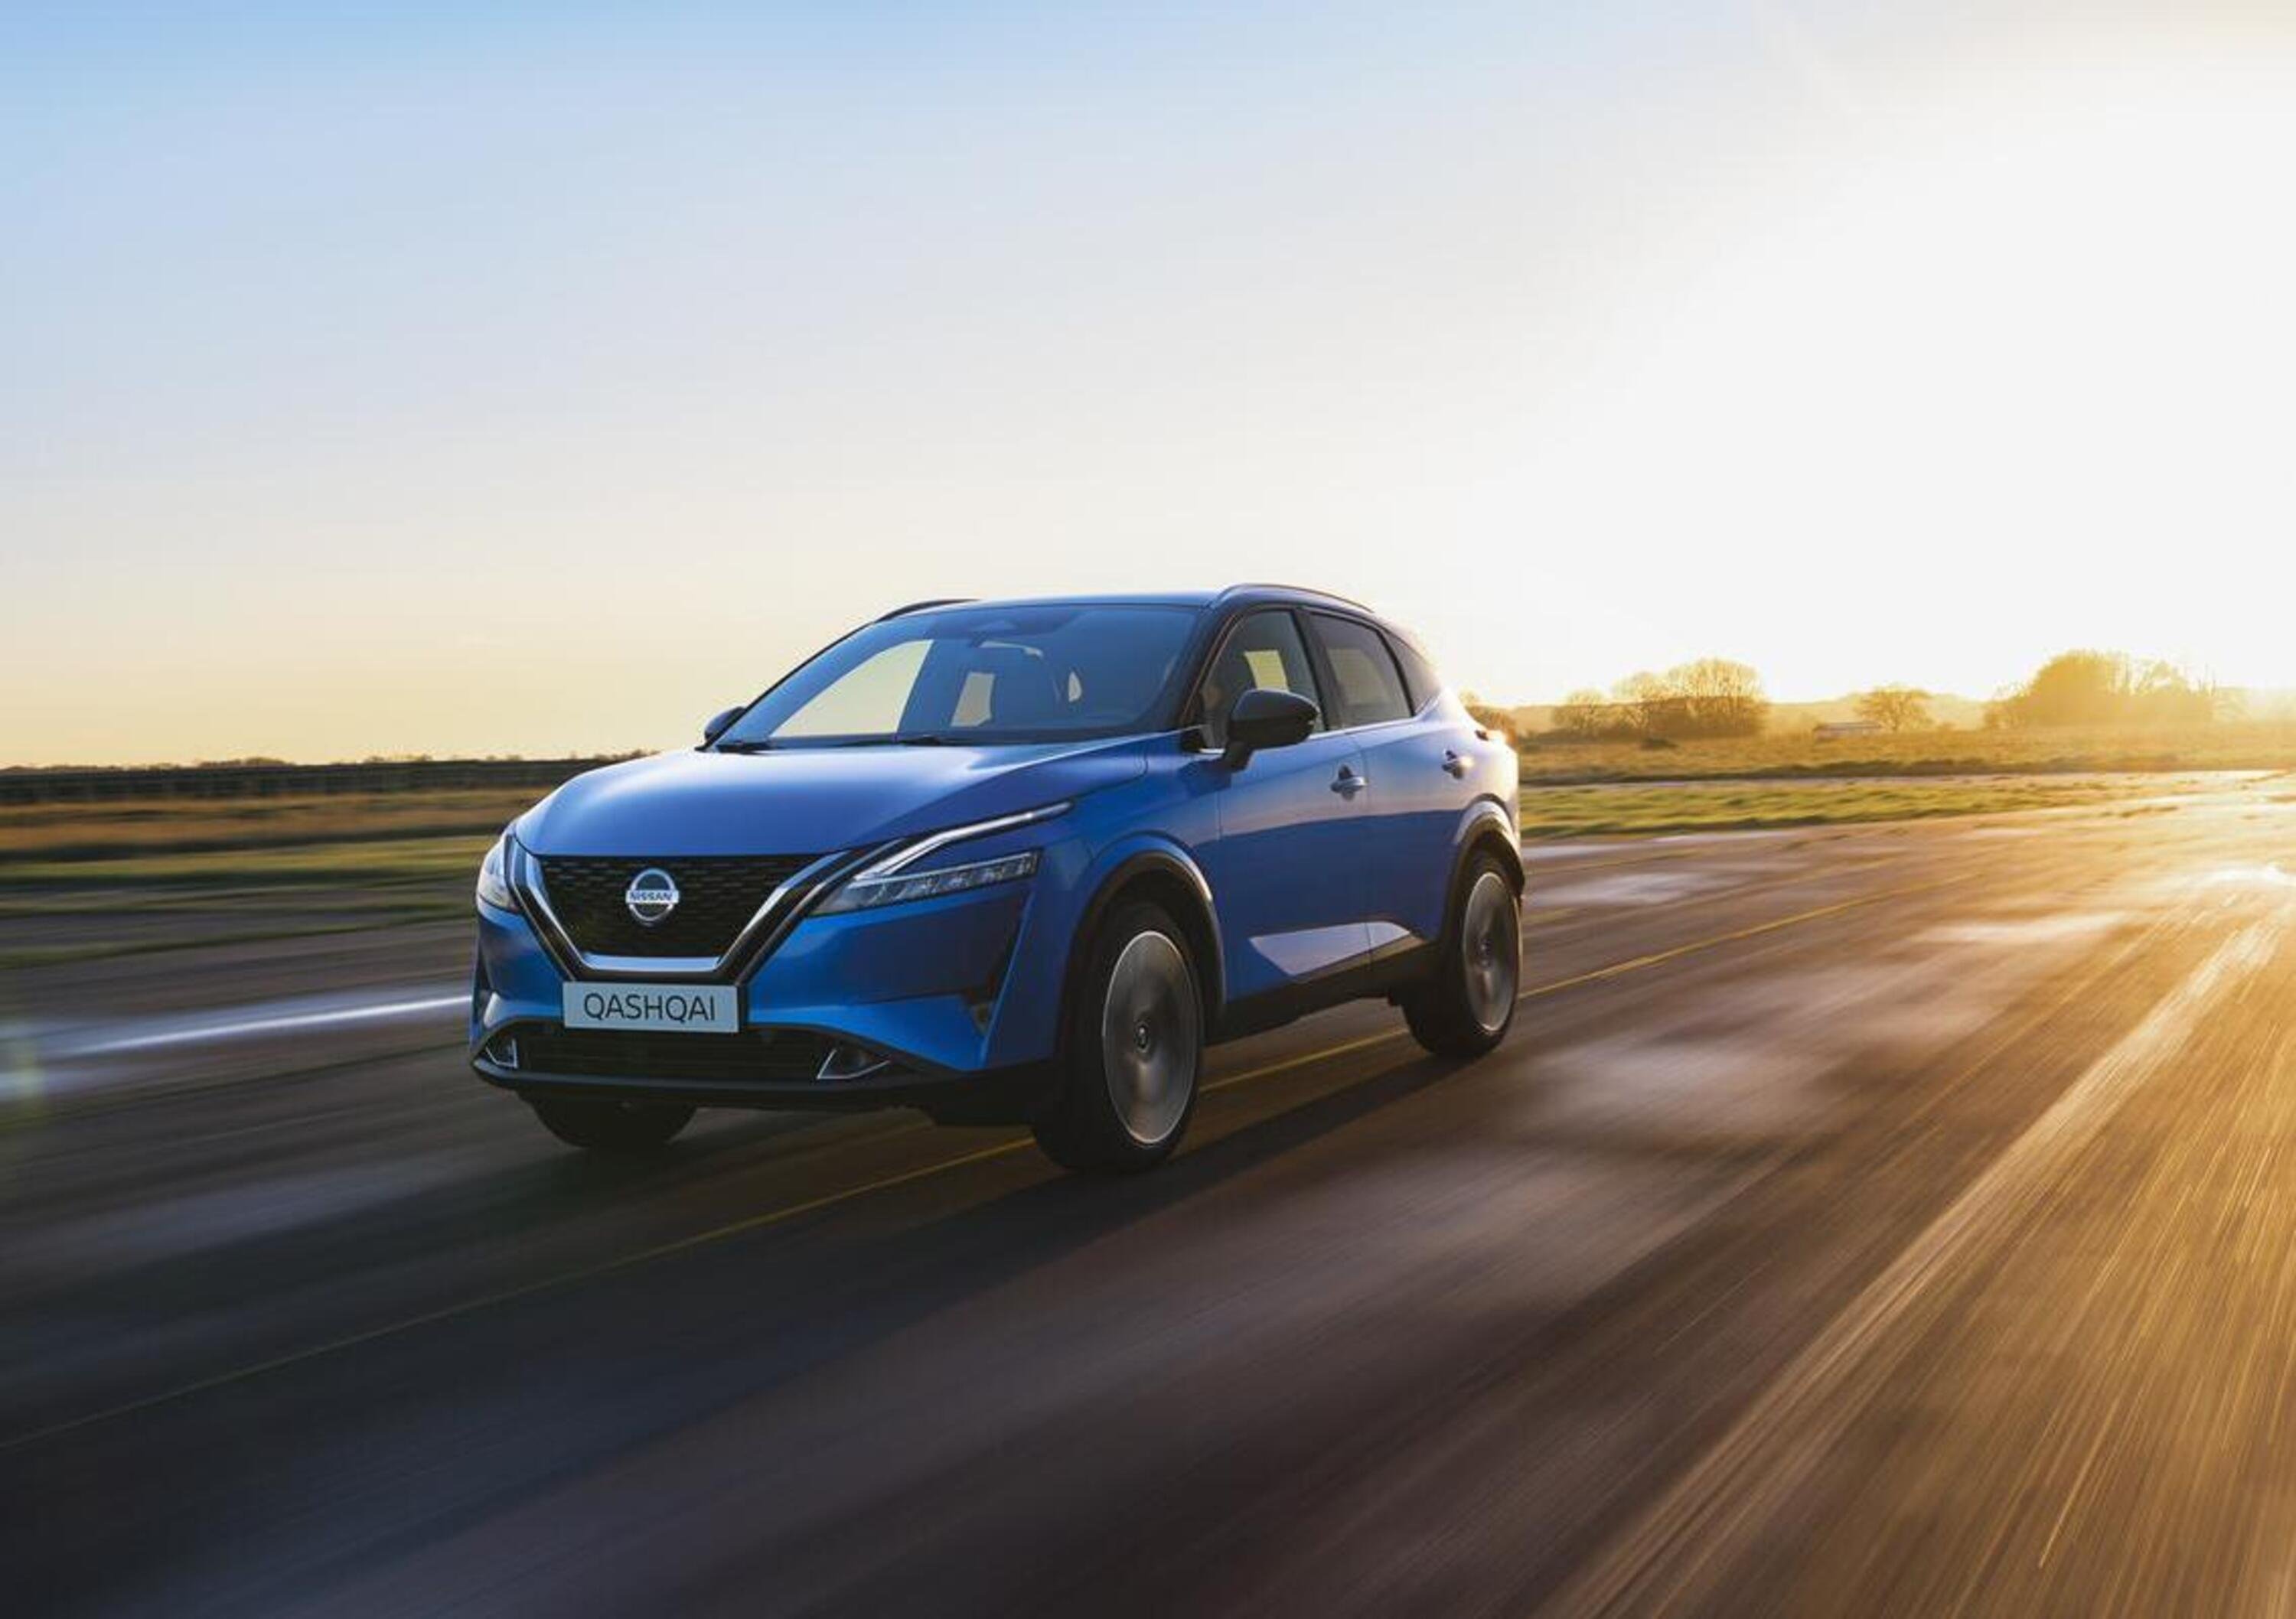 Nuova Nissan Qashqai 2021: Prezzi, allestimenti e versioni del SUV compatto